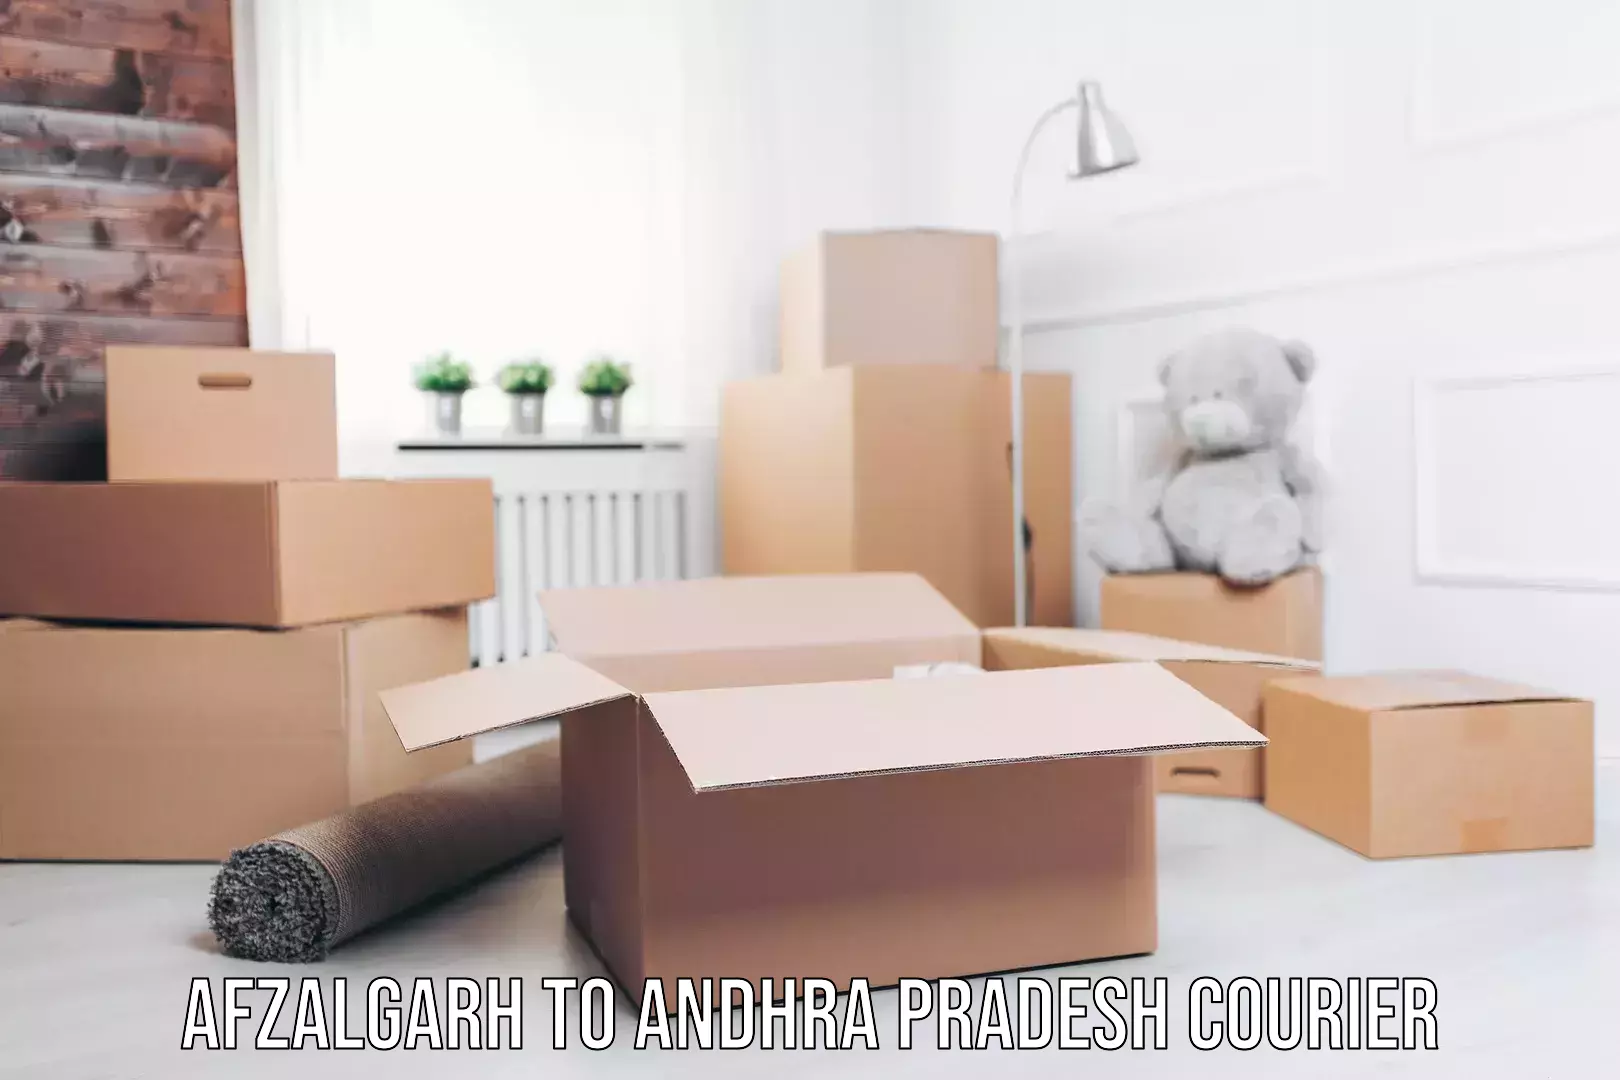 Premium delivery services Afzalgarh to Andhra Pradesh